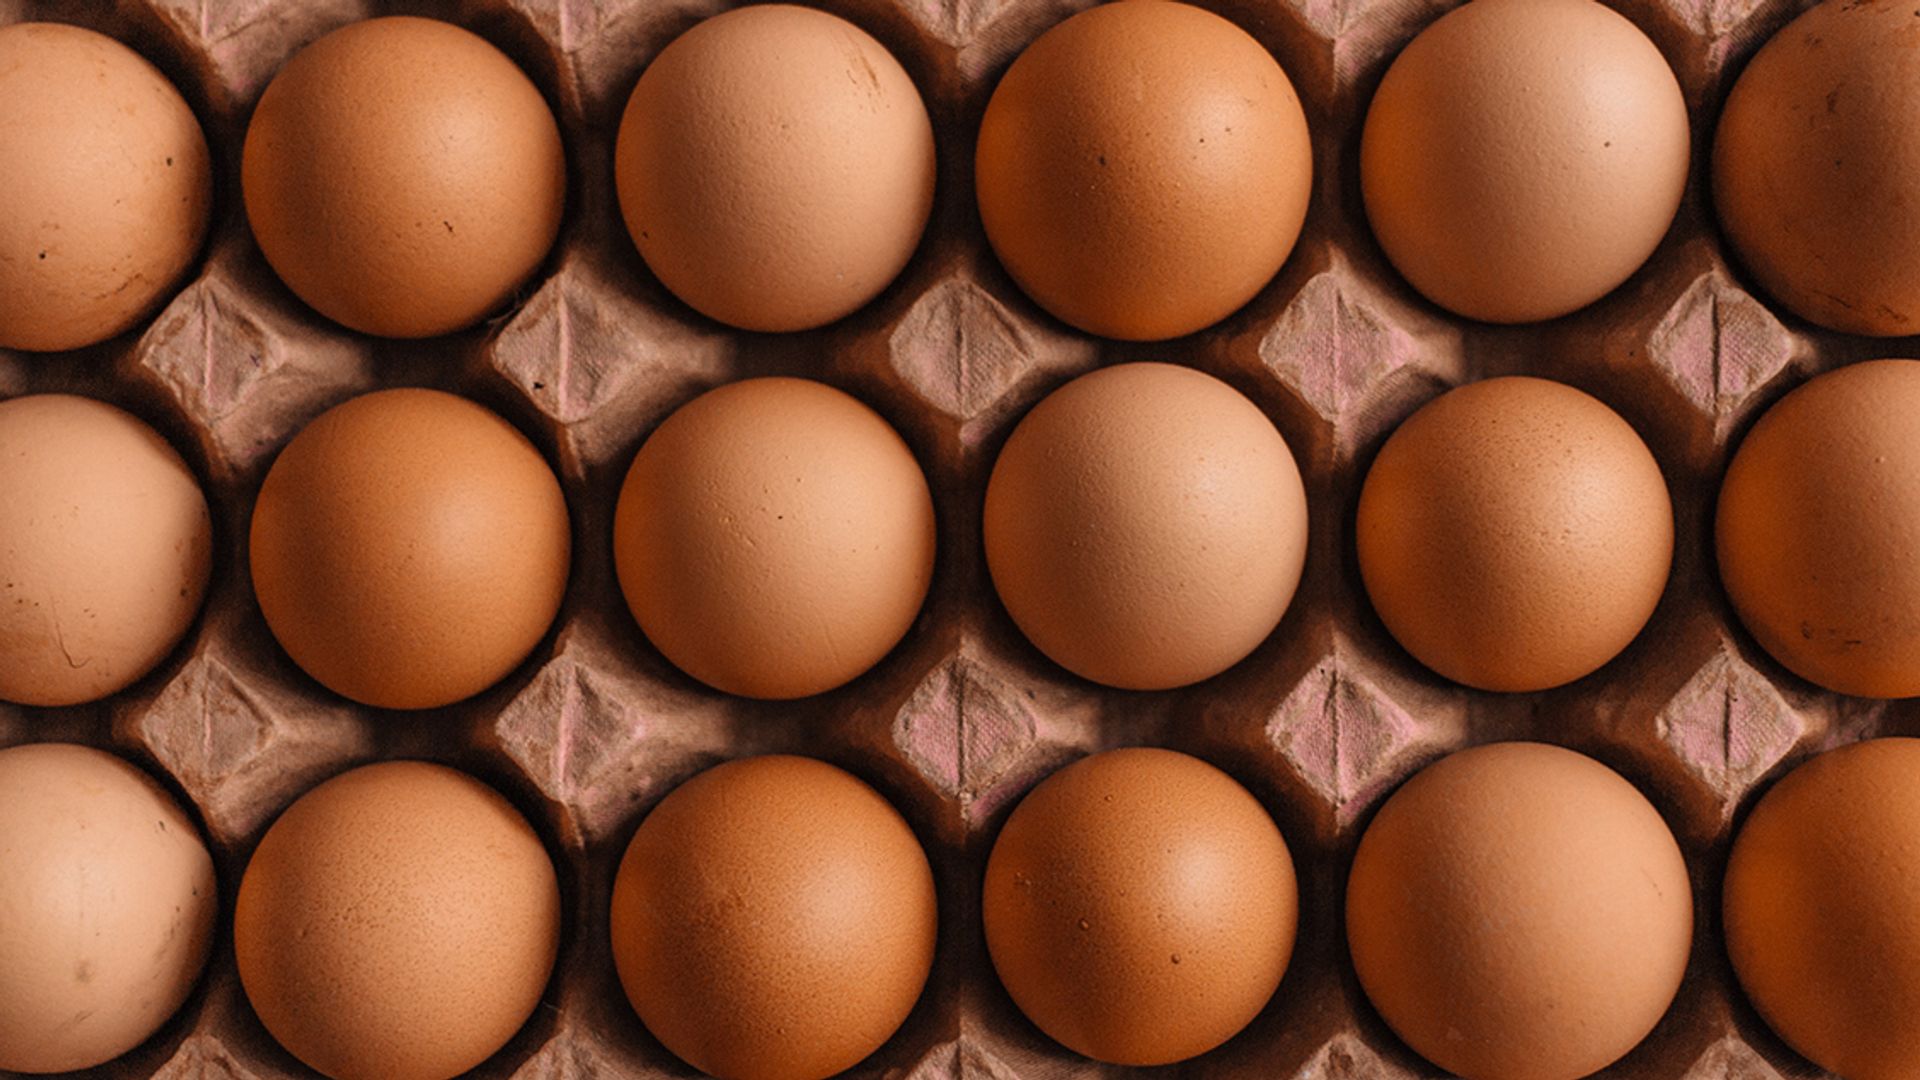 cement Relatieve grootte Misbruik Hoelang kun je eieren bewaren? - Kassa - BNNVARA